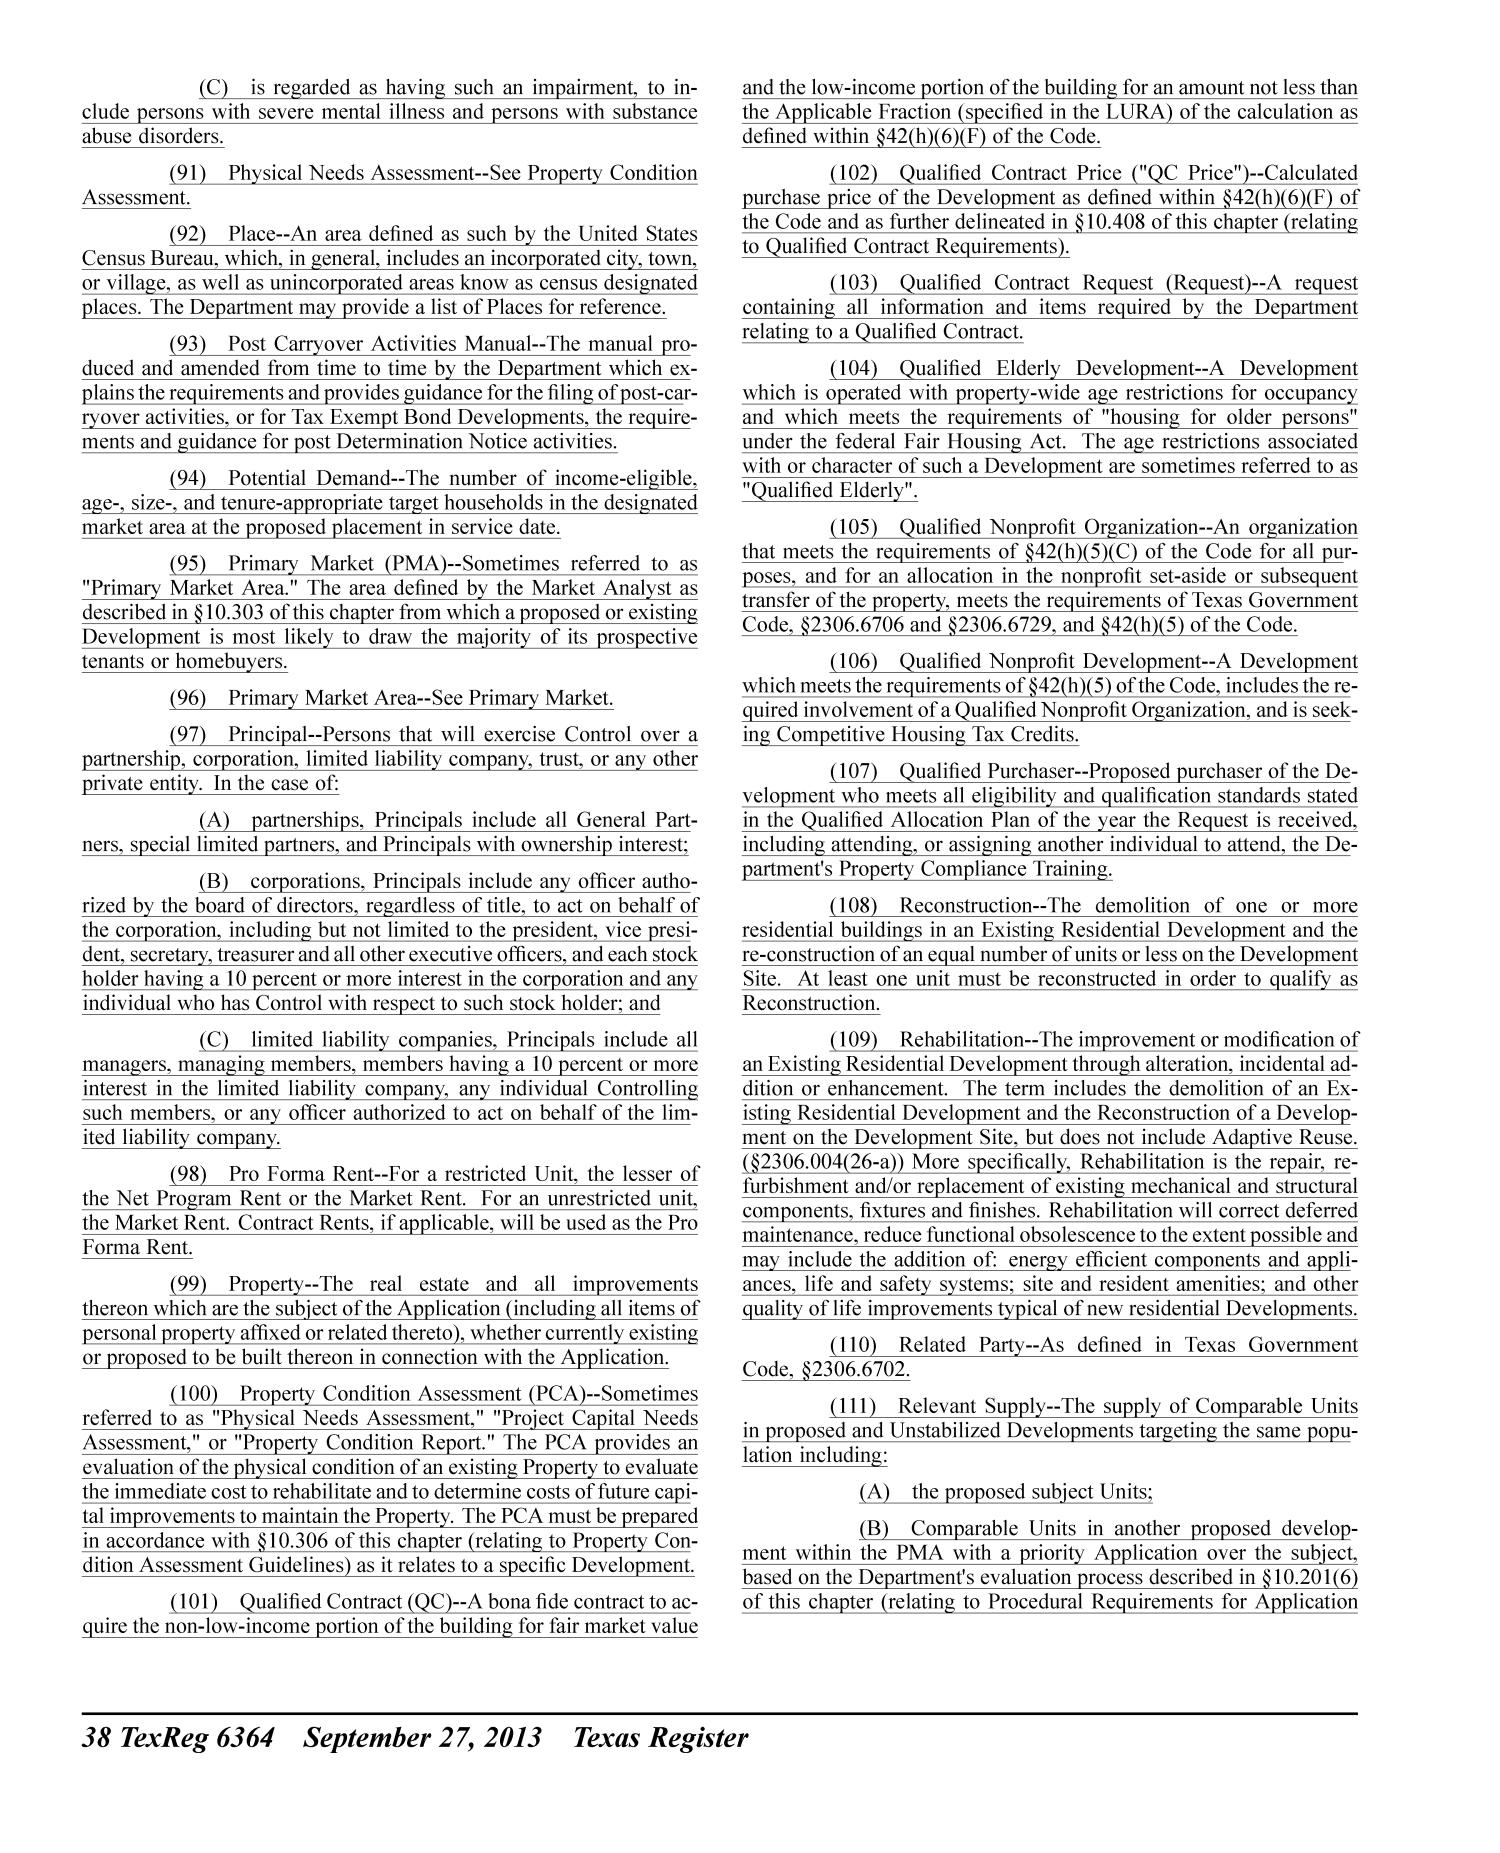 Texas Register, Volume 38, Number 39, Pages 6341-6746, September 27, 2013
                                                
                                                    6364
                                                